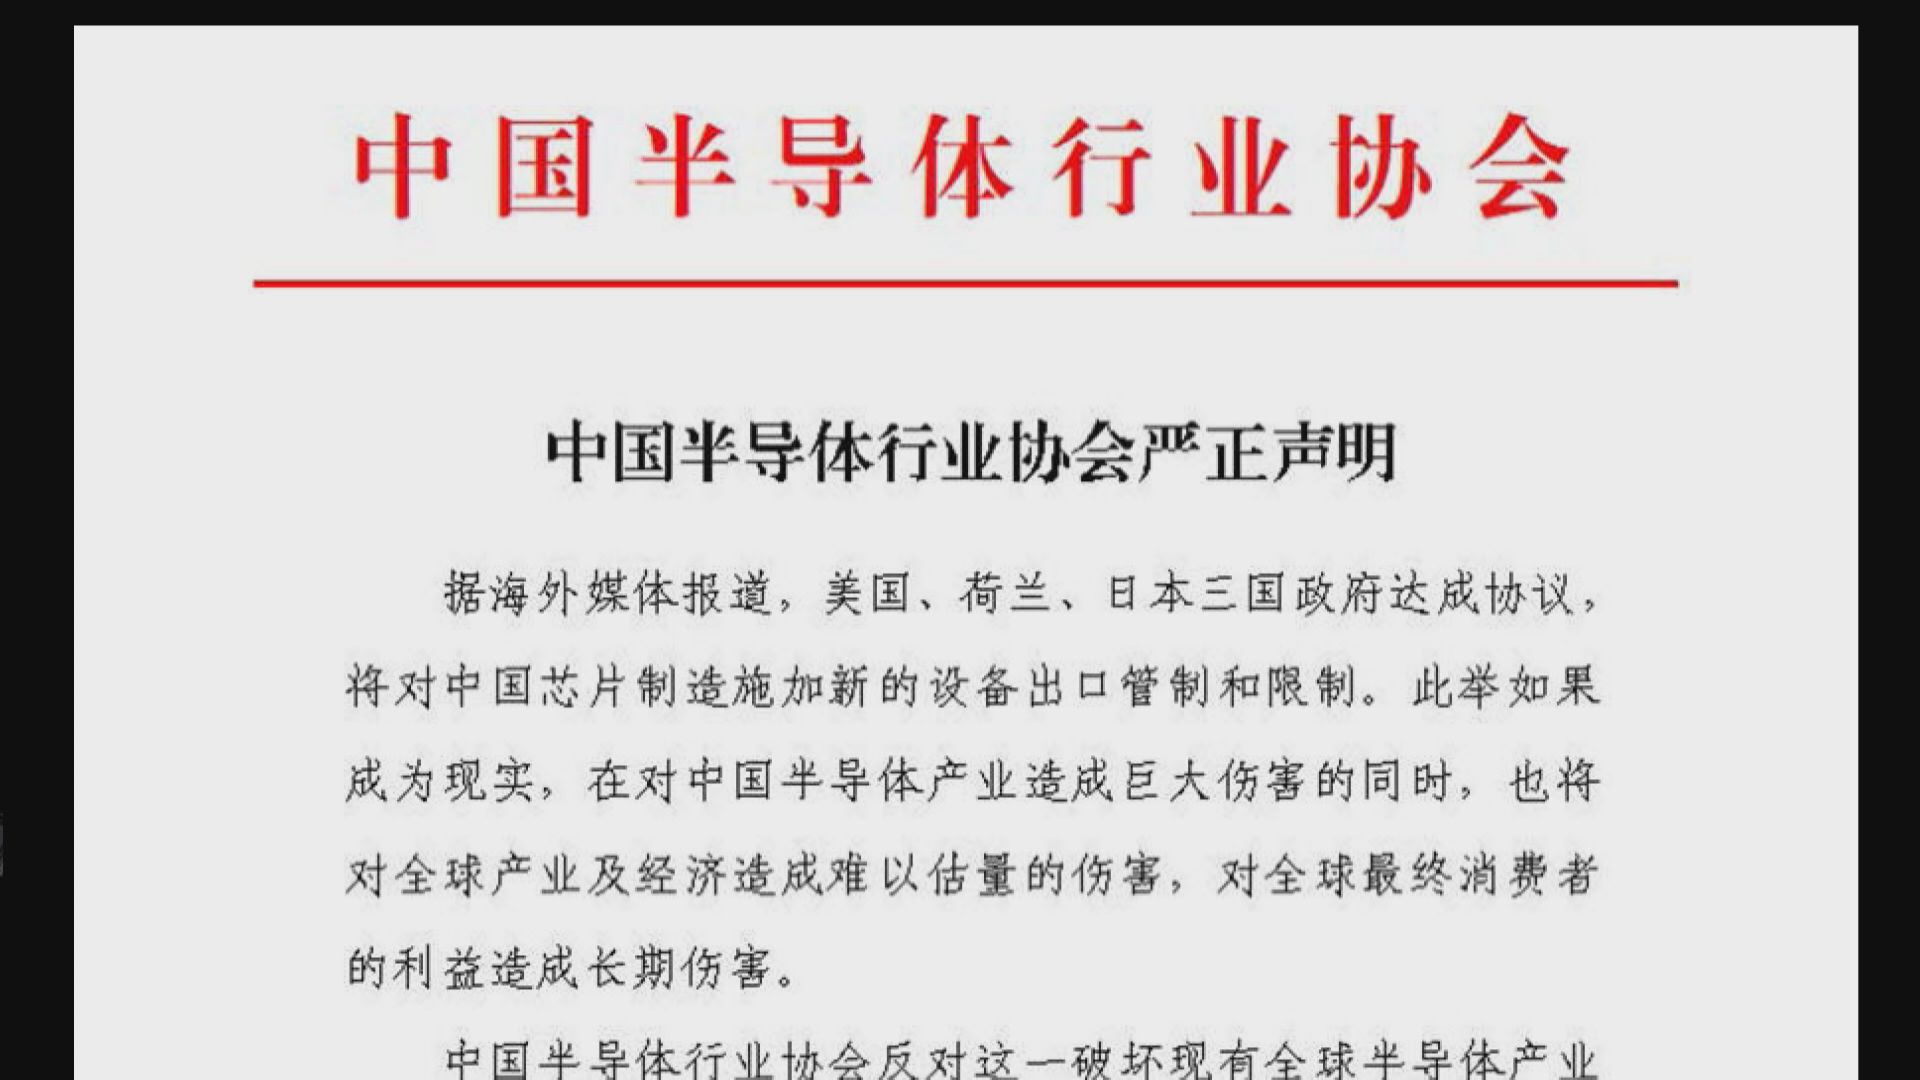 【芯戰升級】中國半導體協會:美日荷「限制」損害全球產業